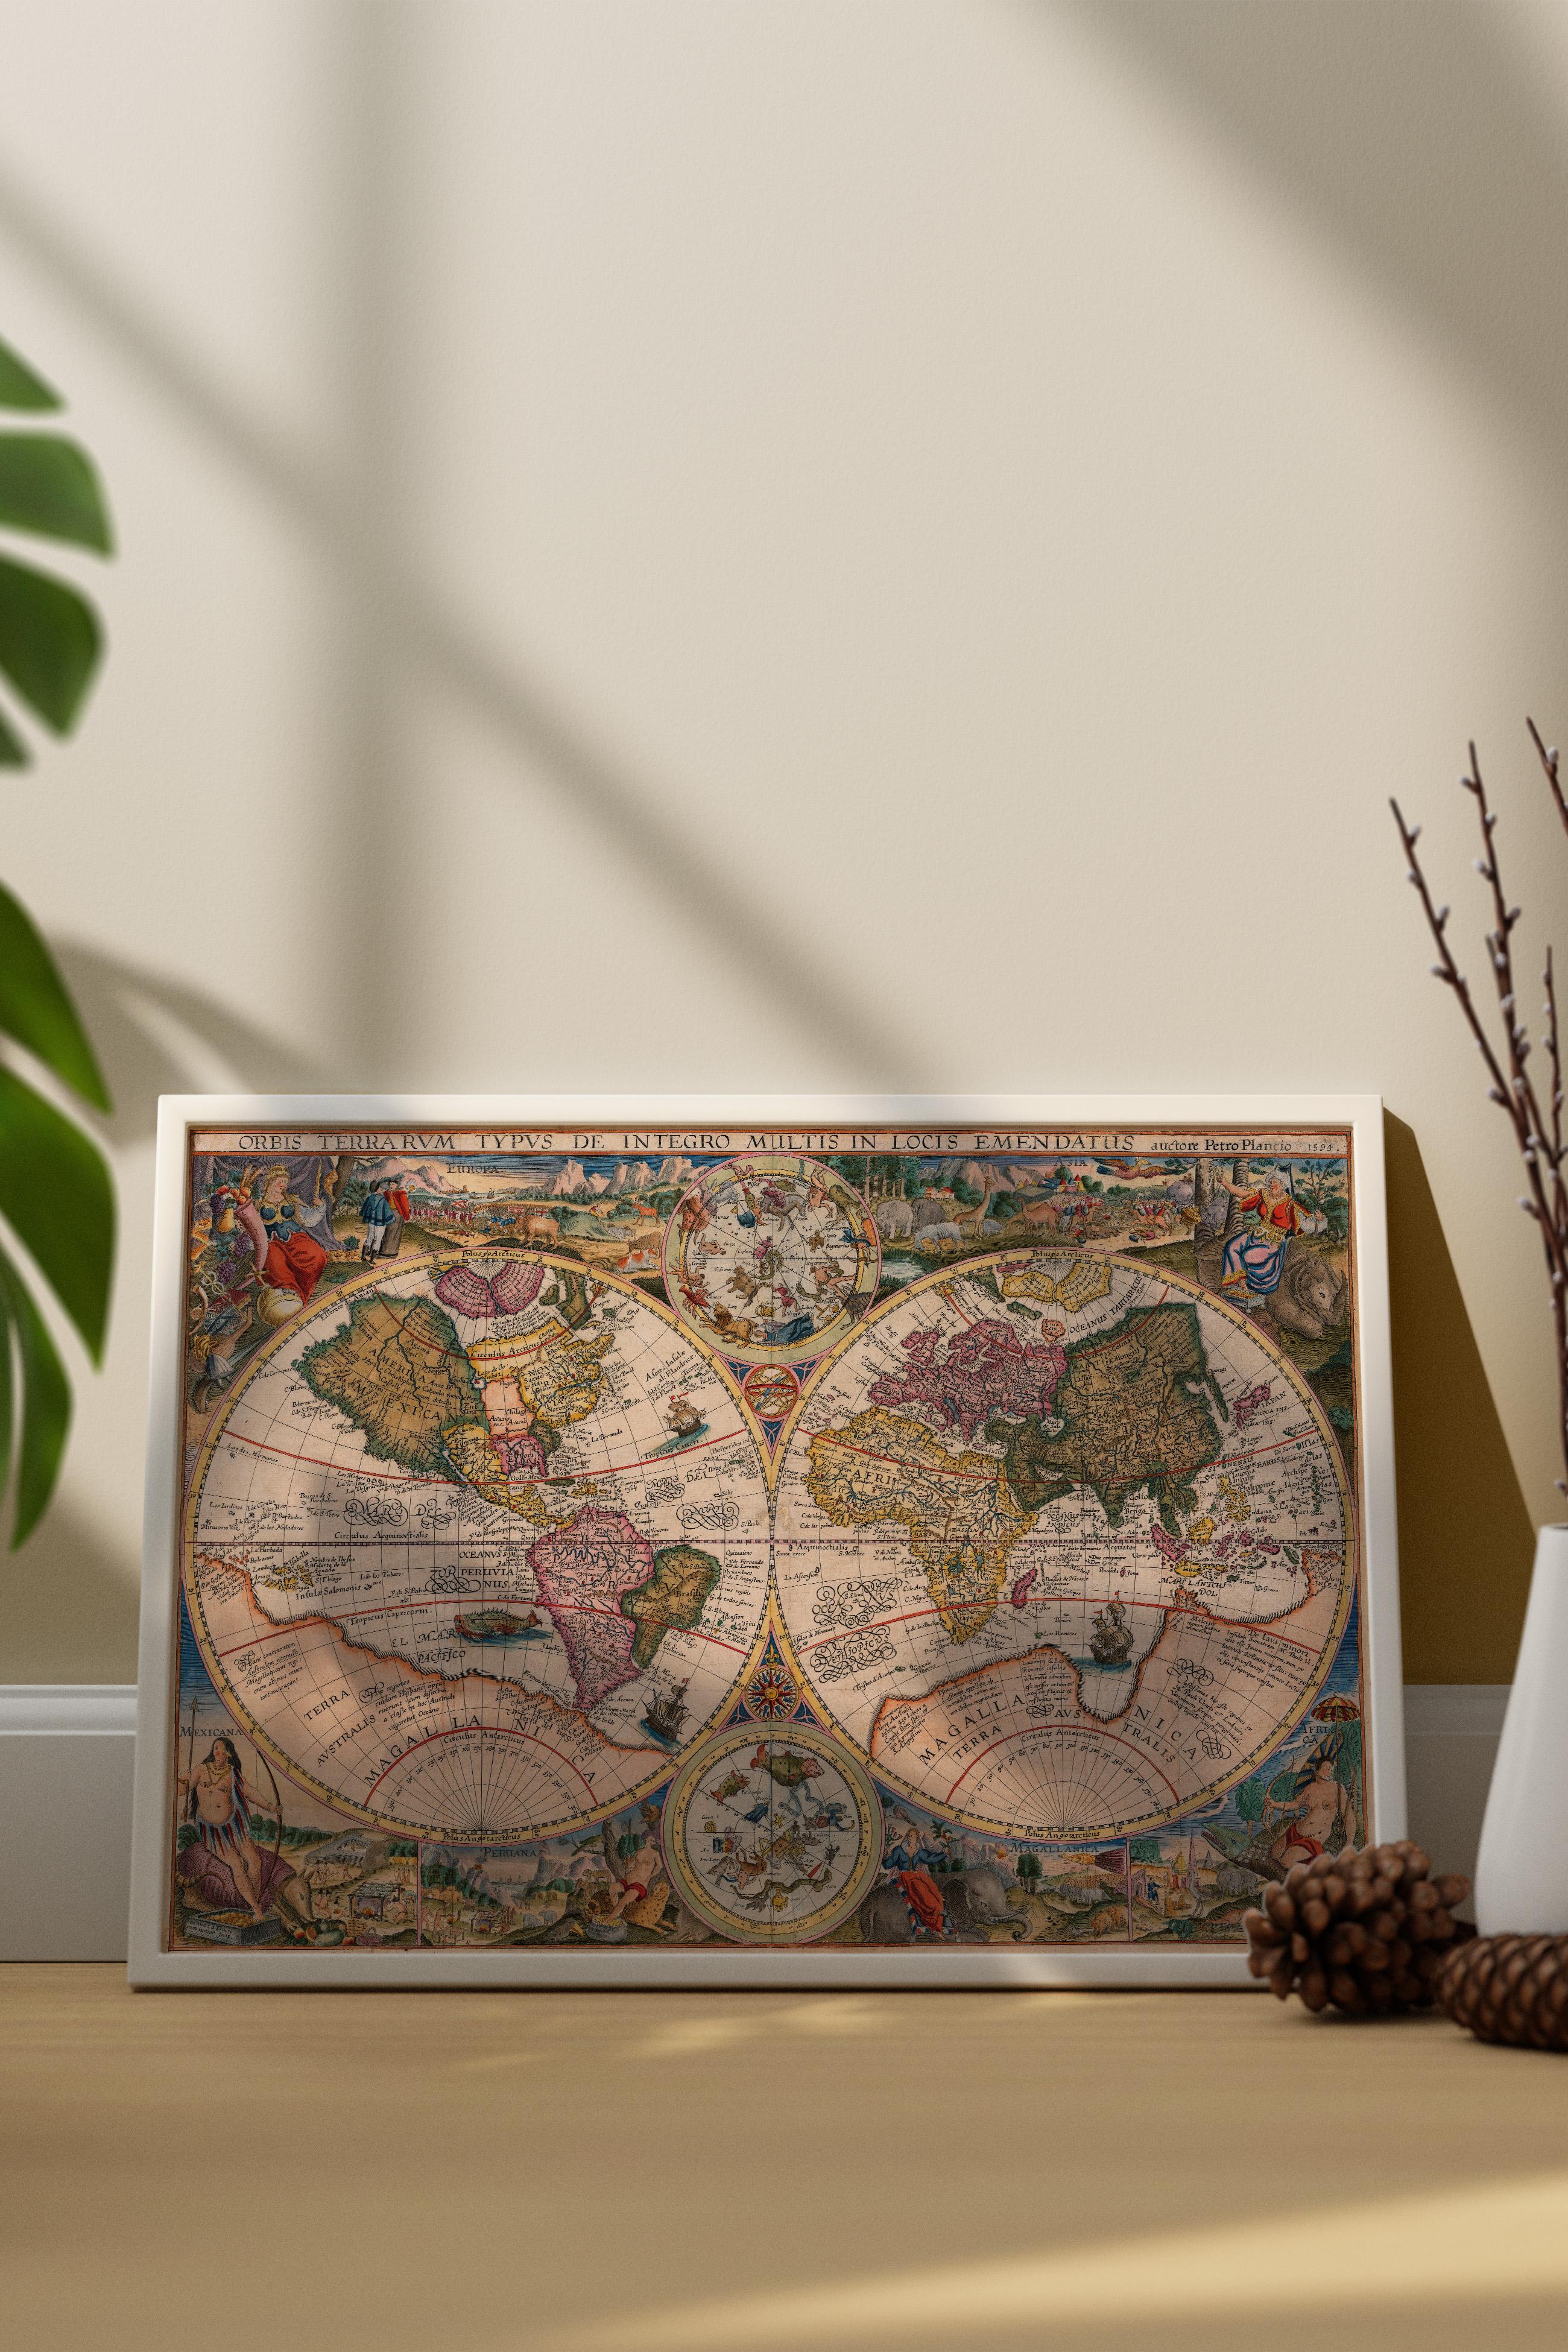 Petrus Plancius - Çift Yarımküre Dünya Haritası (Double Hemisphere World Map - 1594)